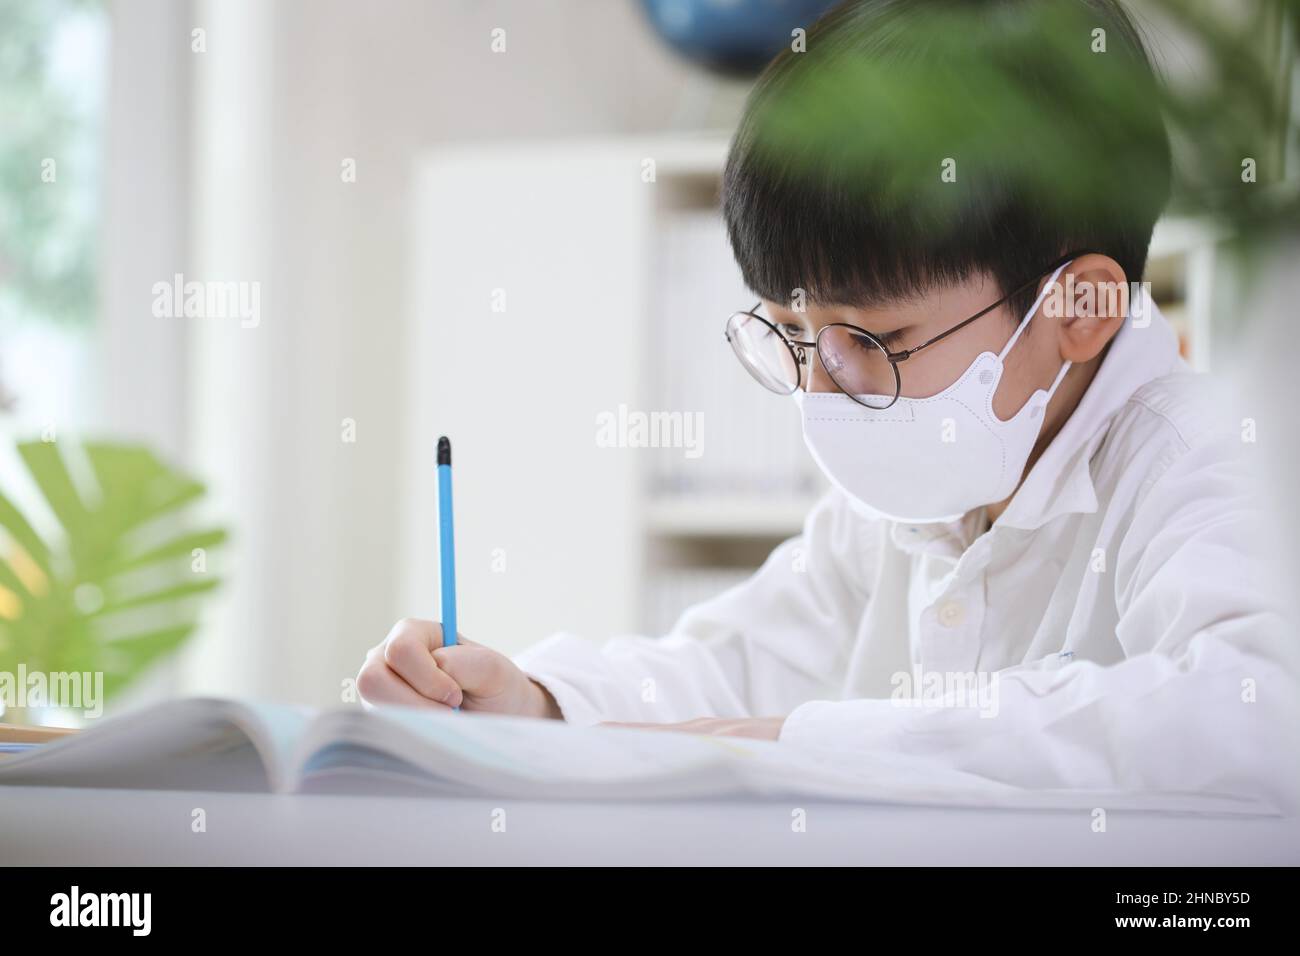 Studente intelligente e carino in una maschera che studia duro mentre si concentra sta imparando mentre prende appunti in libri e note alla sua scrivania. Foto Stock